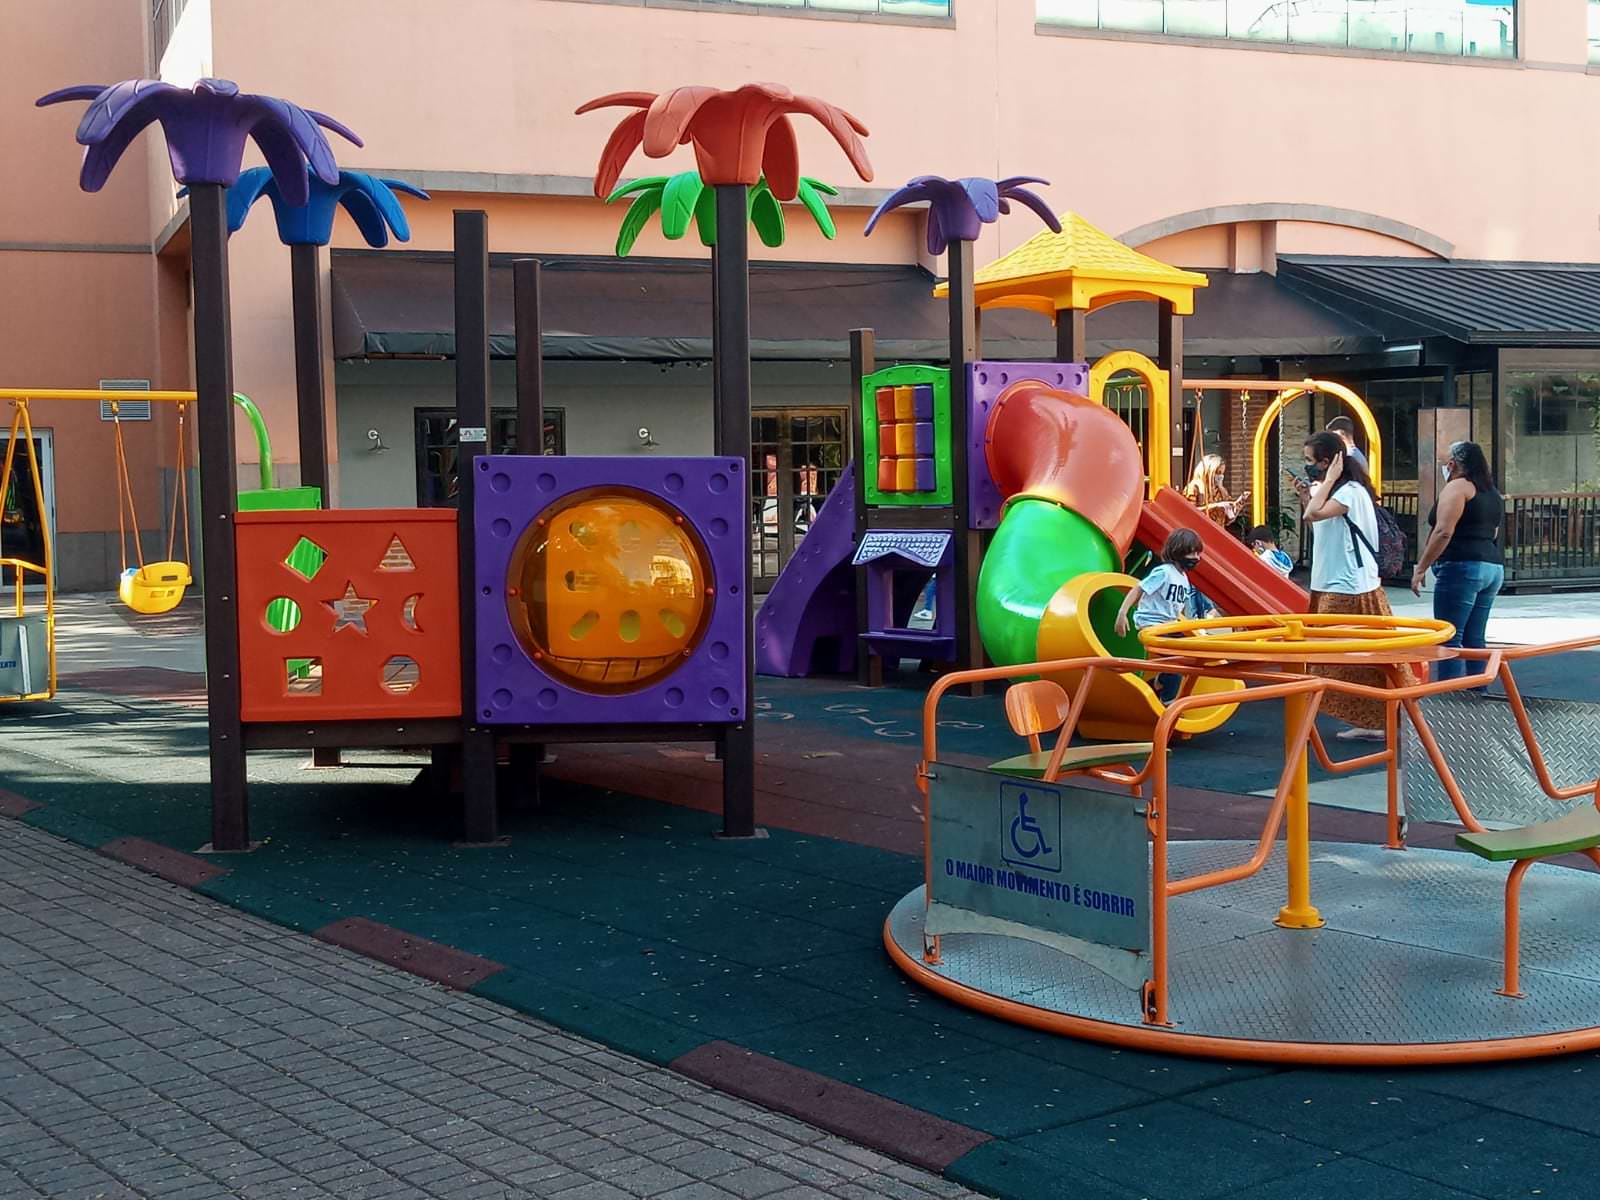 Ο χώρος πολλαπλών χρήσεων στο Barra διαθέτει παιχνίδια χωρίς αποκλεισμούς για παιδιά με αναπηρικά αμαξίδια. Φωτογραφίες: Αποκάλυψη.